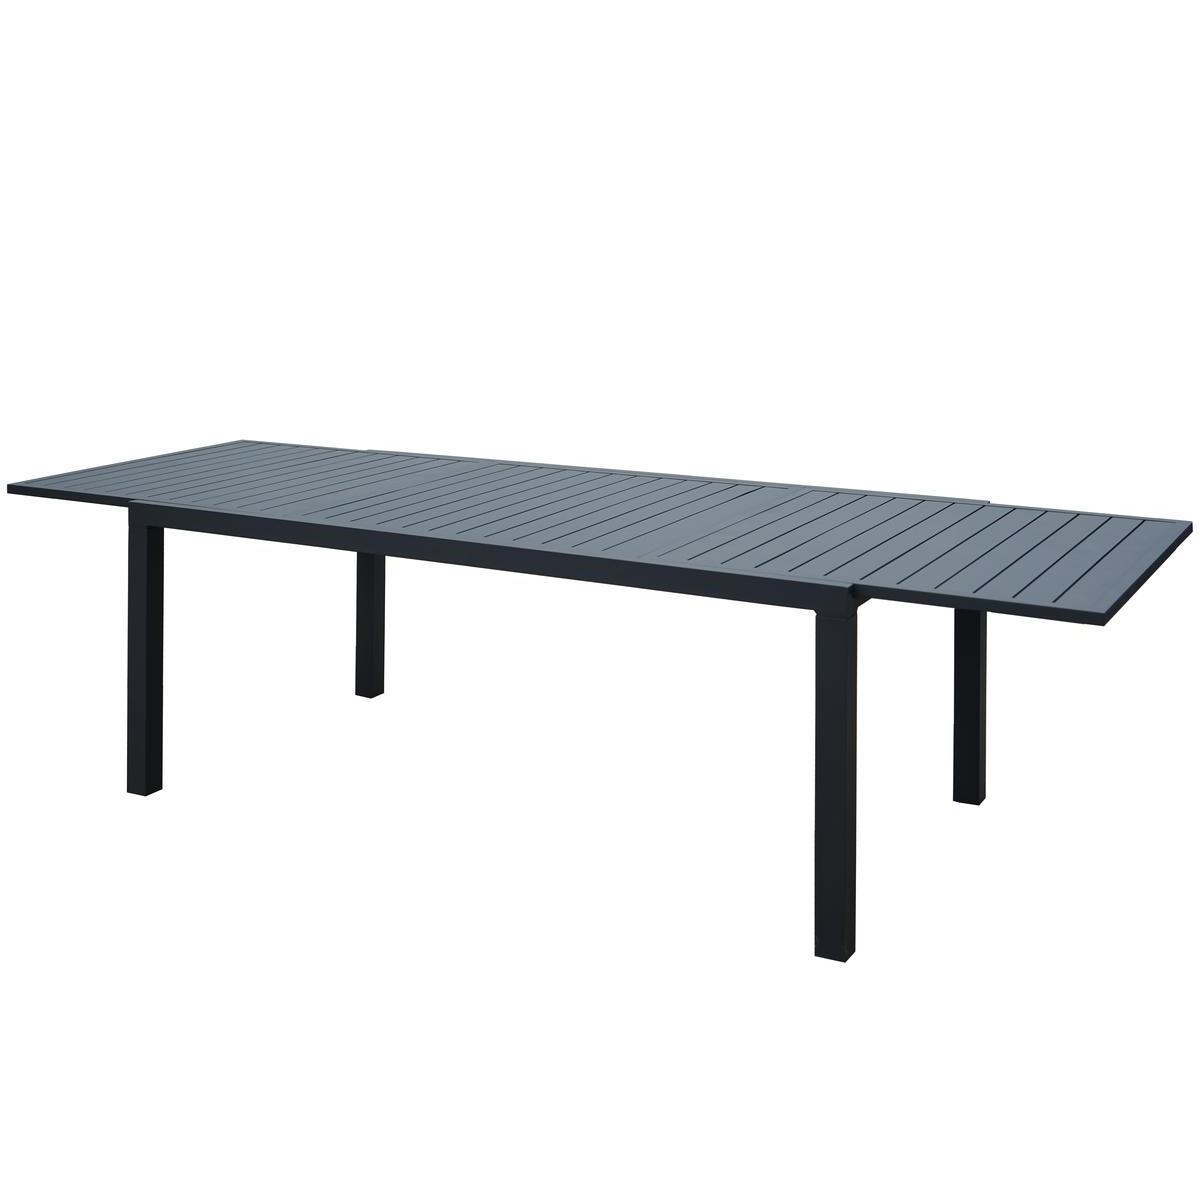 Table extensible Pola - 104 x L 200 x H 75 cm - Gris